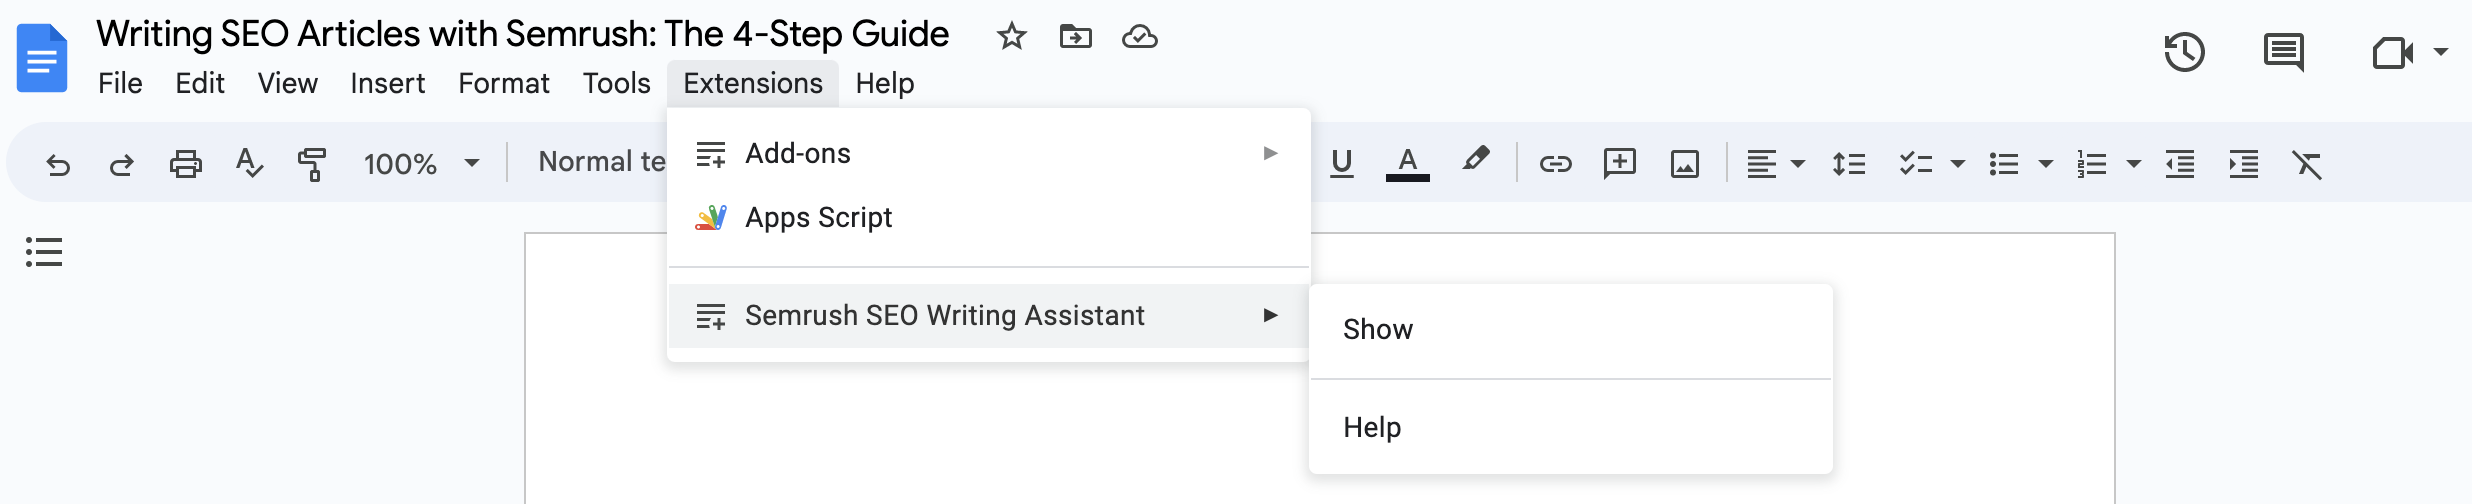 Dans Google Docs, rendez-vous dans le menu « Extensions » en haut de la page, puis dans « Semrush SEO Writing Assistant » et cliquez sur « Show ». 